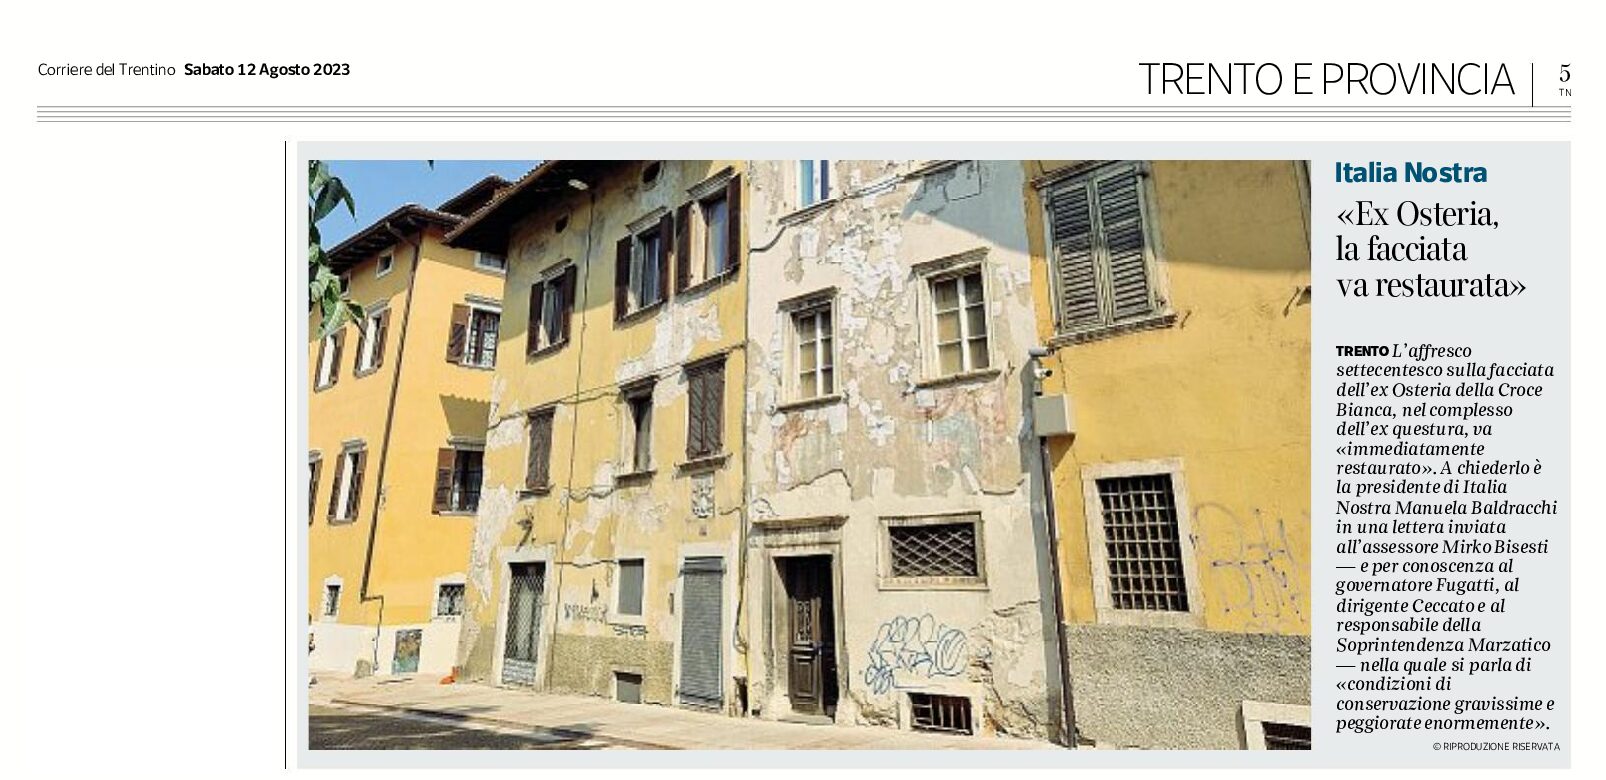 Trento, ex Osteria: la presidente Baldracchi di Italia Nostra “la facciata va restaurata immediatamente”